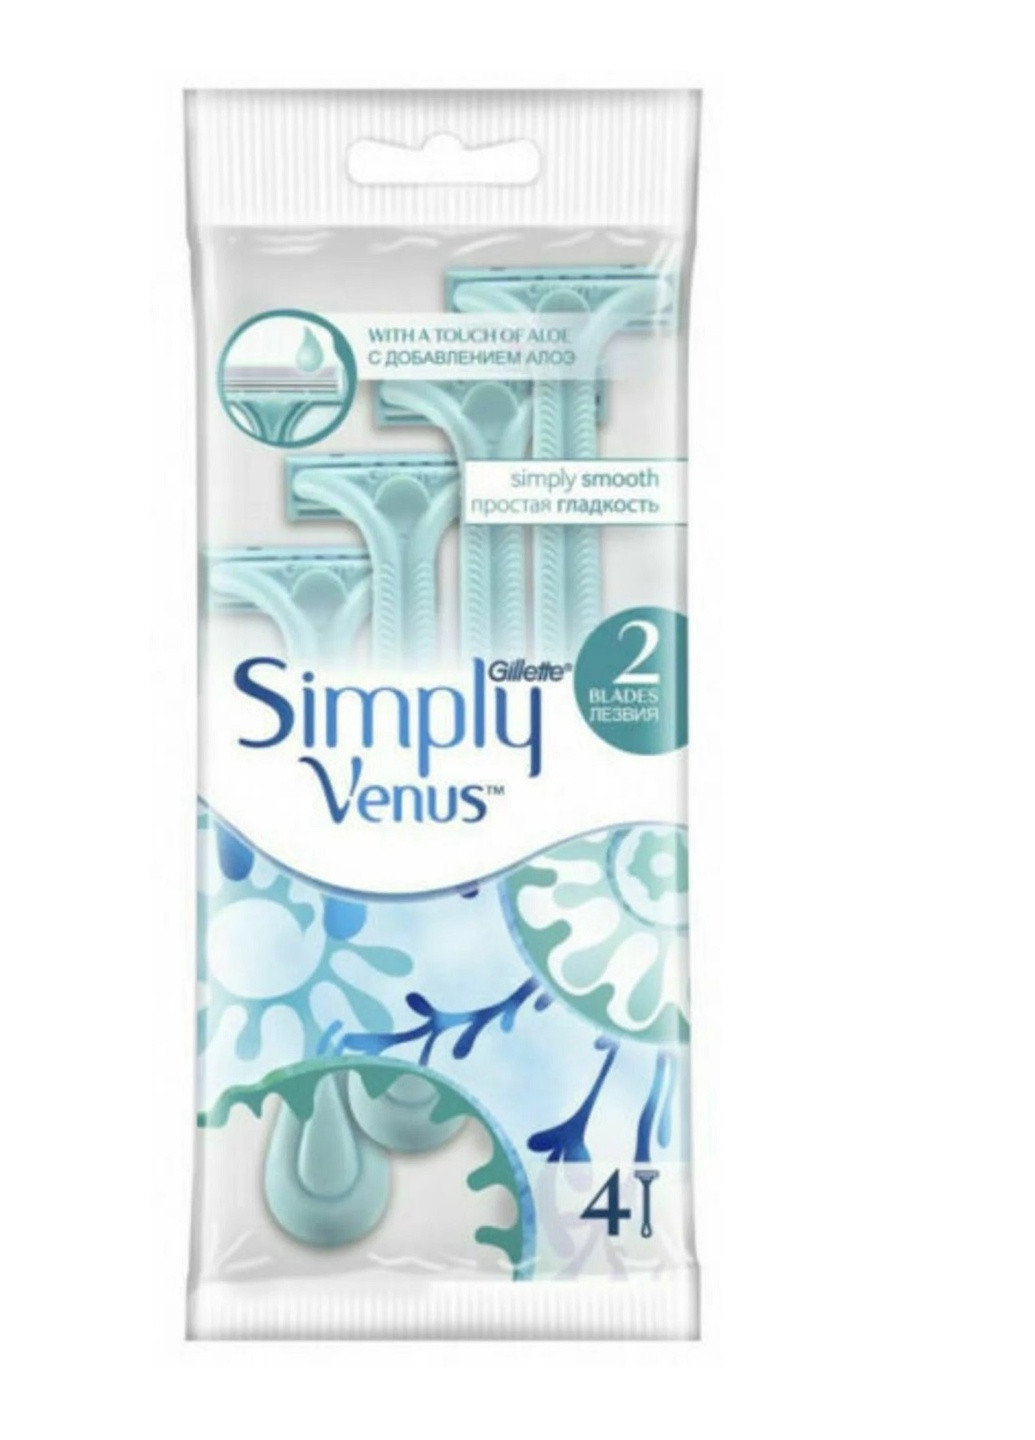 Одноразові бритви для гоління Simply Venus 2 Basic, 4шт Gillette (253725018)